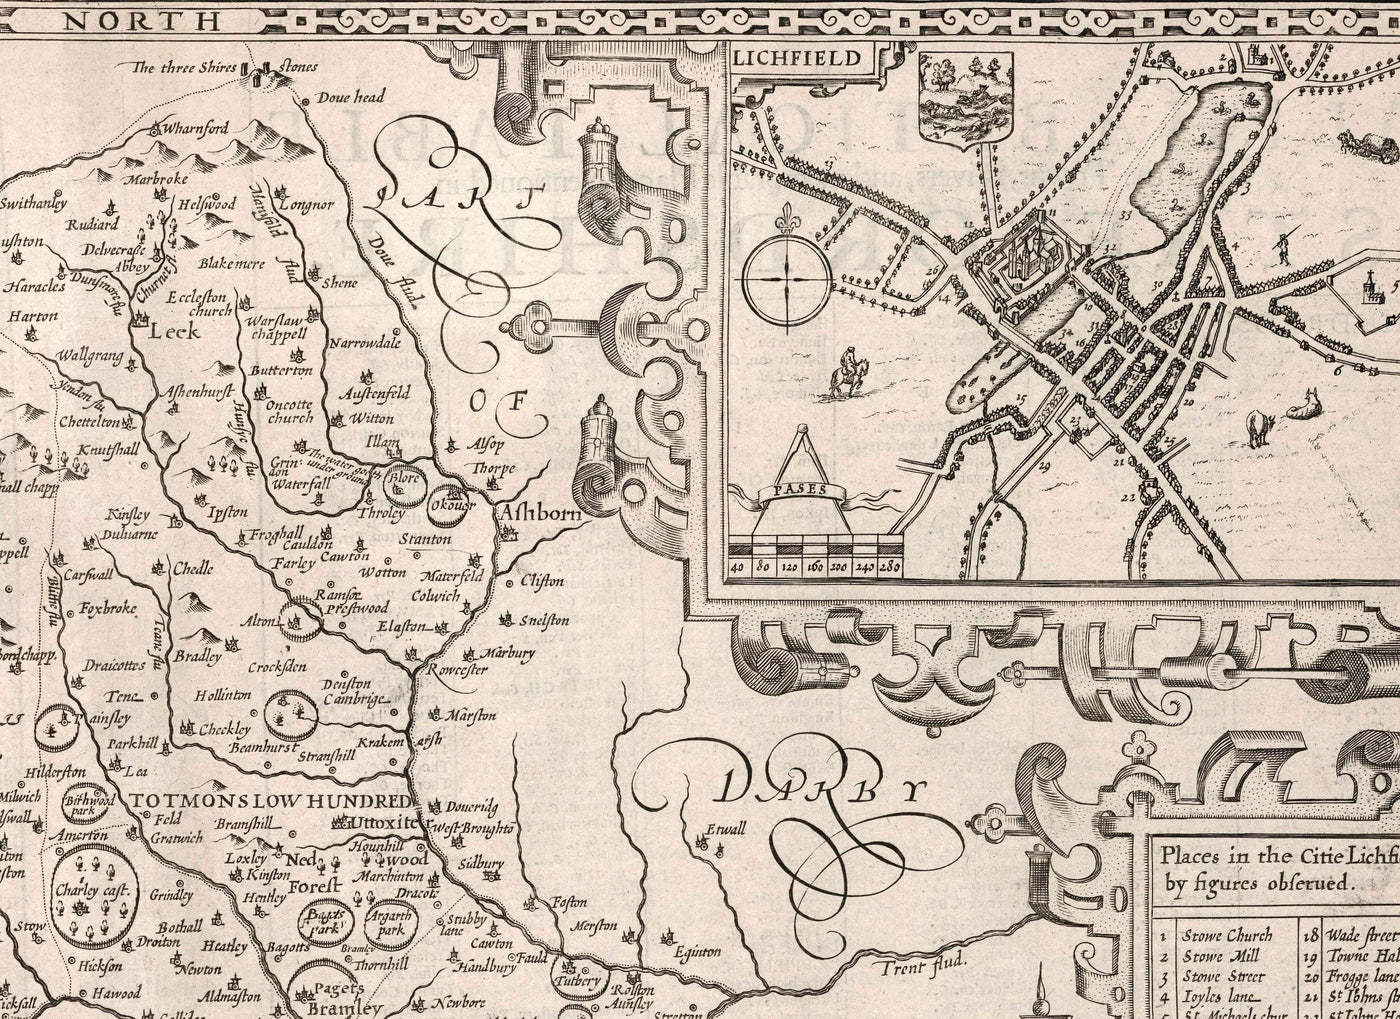 Alte monochrome Karte von Staffordshire, 1611 von John Speed-Stafford, Wolverhampton, Stoke-on-Trent, Birmingham, Walsall, Dudley